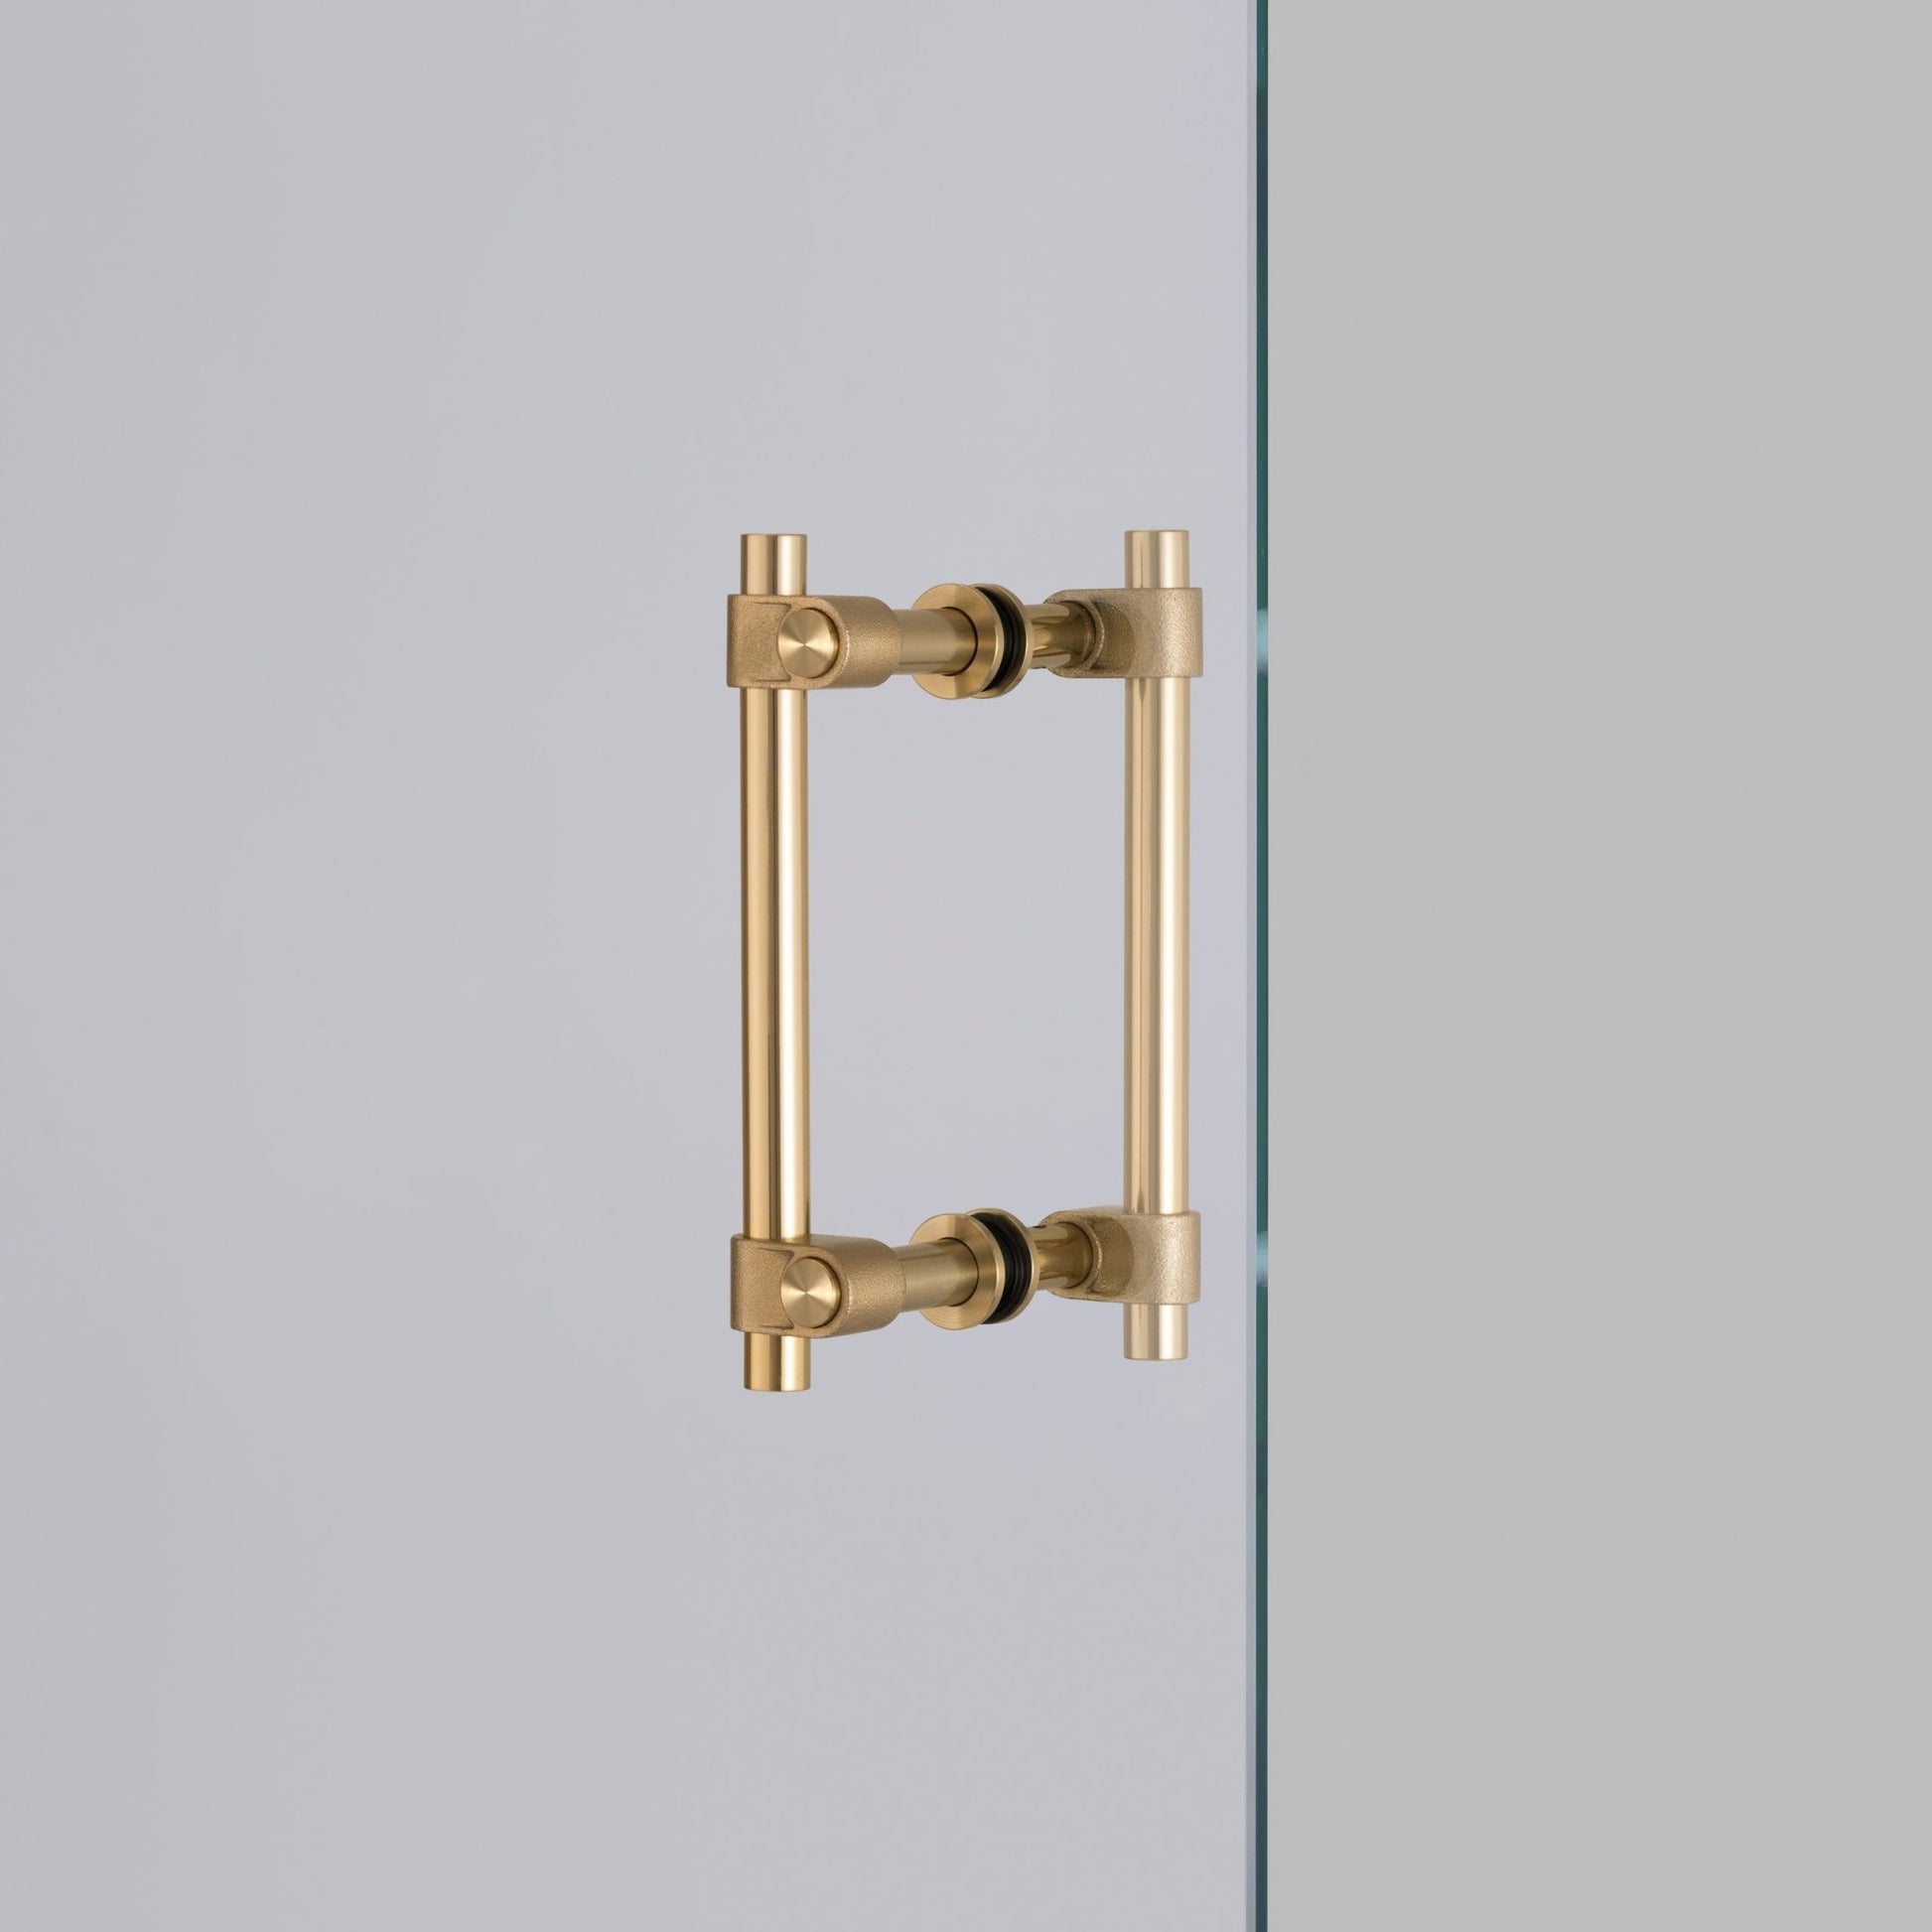 Unlacquered Solid Antique Brass Bathroom Accessories Set –, VESIMI Design